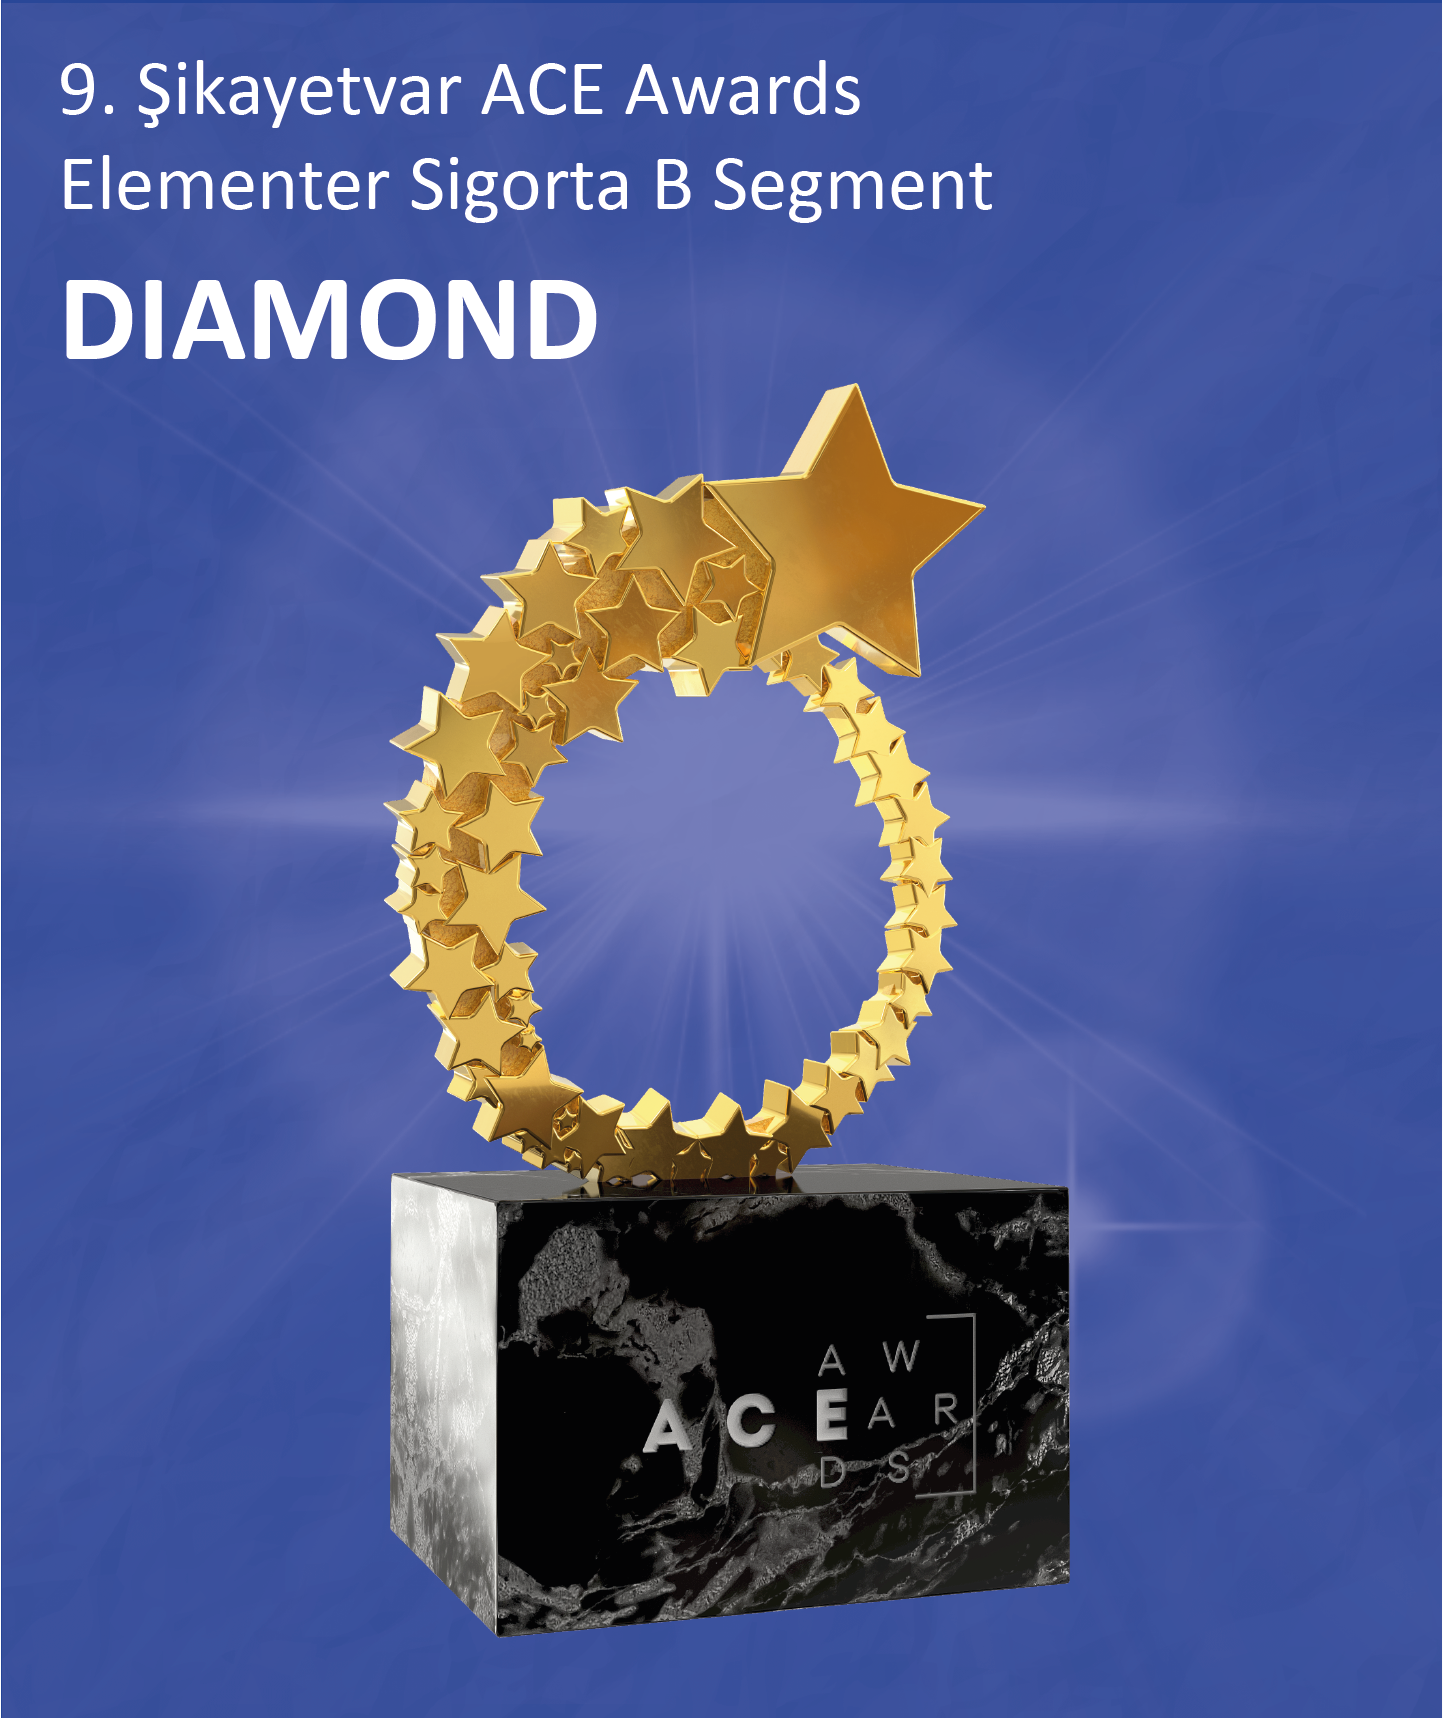 8. Şikayetvar ACE Awards Sigorta B Segment DIAMON ödülü